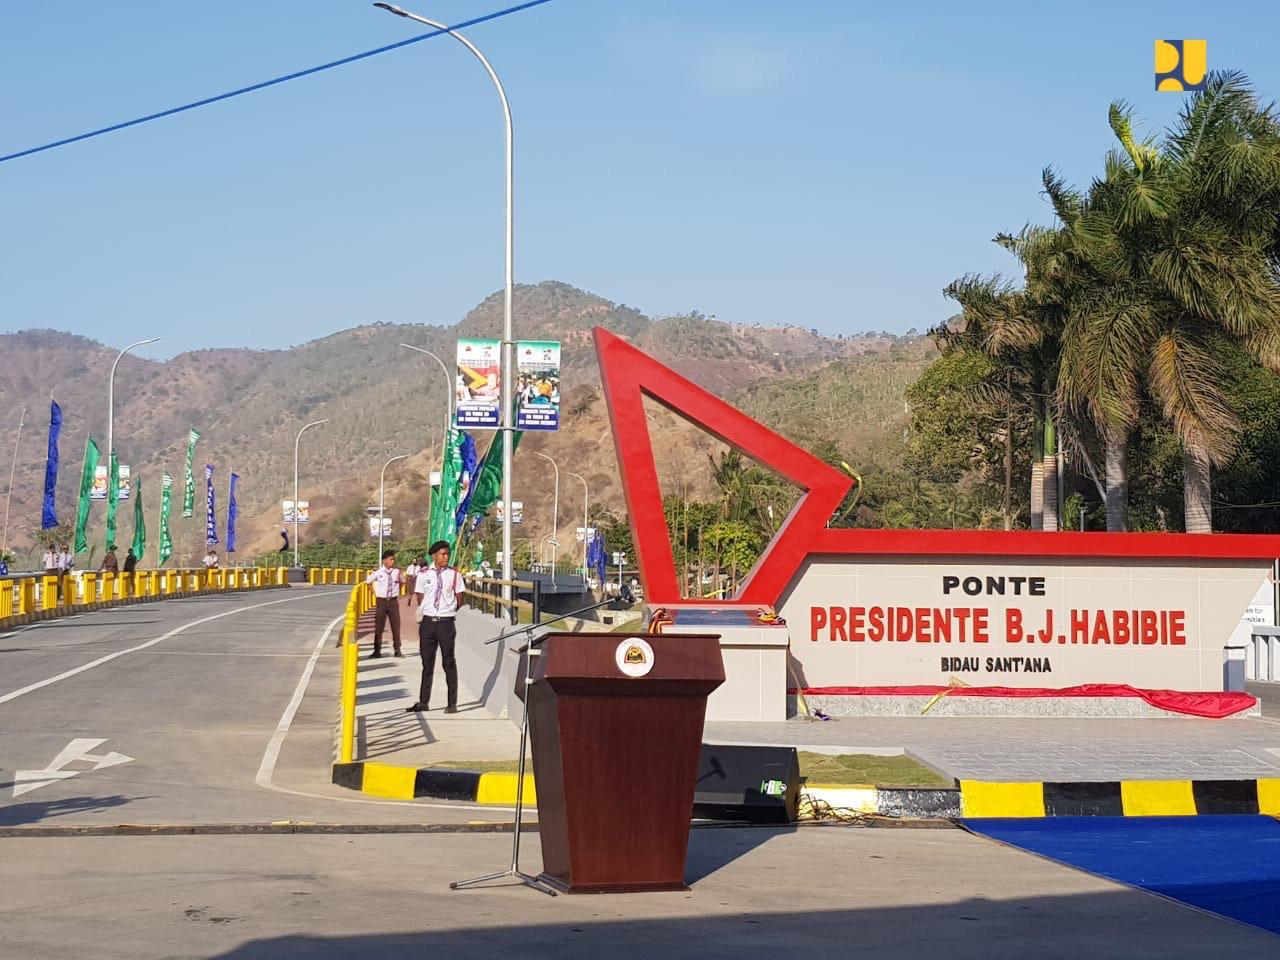 Jembatan yang dibangun Pemerintah Timor Leste dengan nama Jembatan BJ Habibie karena masyarakat Timor Leste menghormati sosok Presiden ke-3 Indonesia itu. (Foto: PUPR)